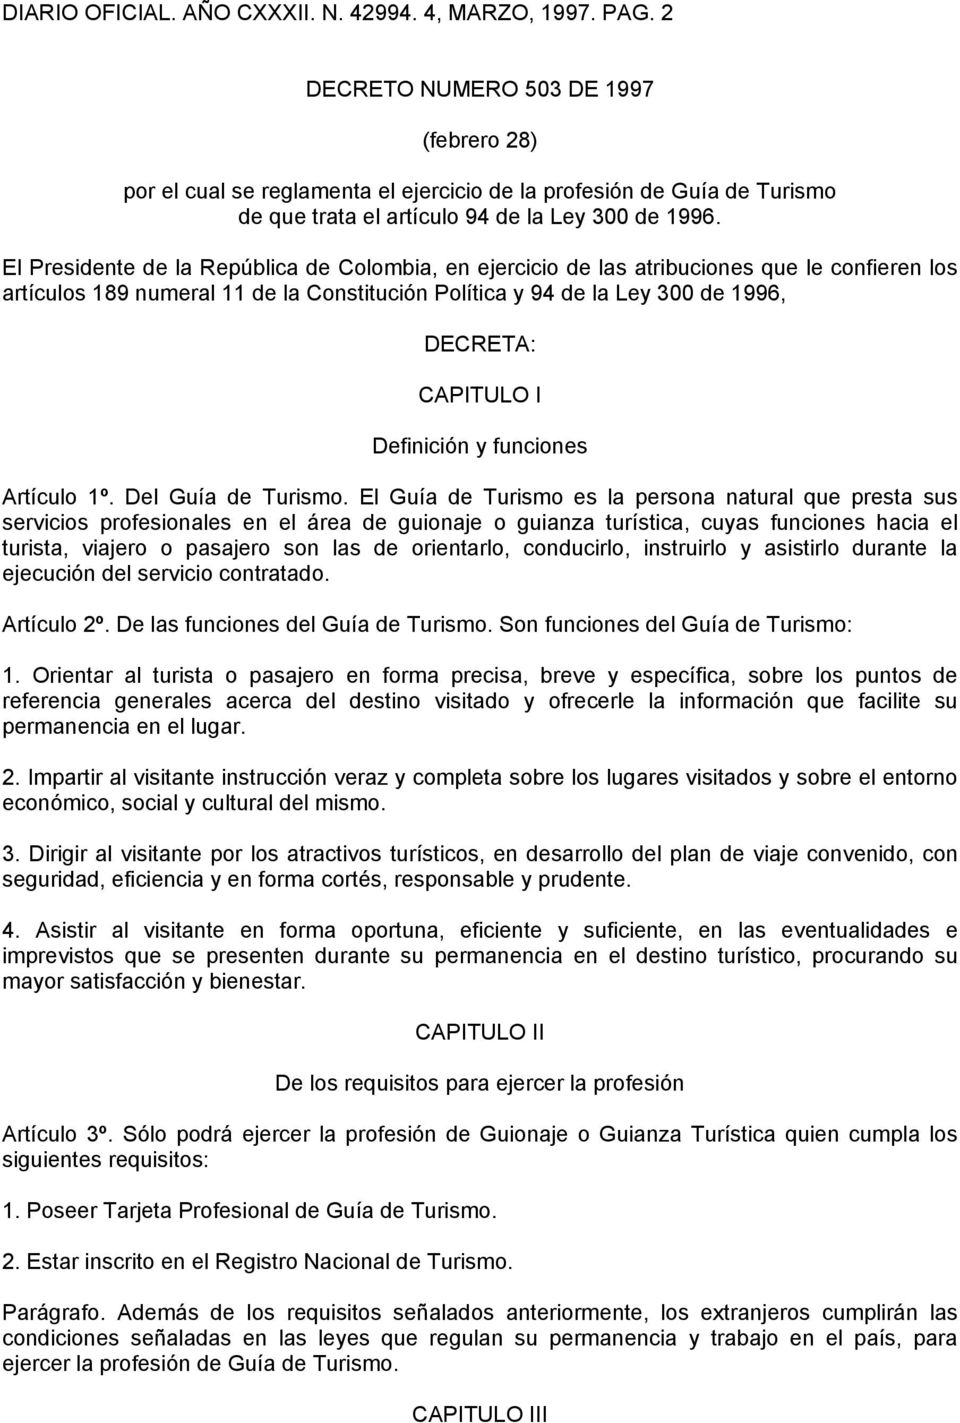 El Presidente de la República de Colombia, en ejercicio de las atribuciones que le confieren los artículos 189 numeral 11 de la Constitución Política y 94 de la Ley 300 de 1996, DECRETA: CAPITULO I